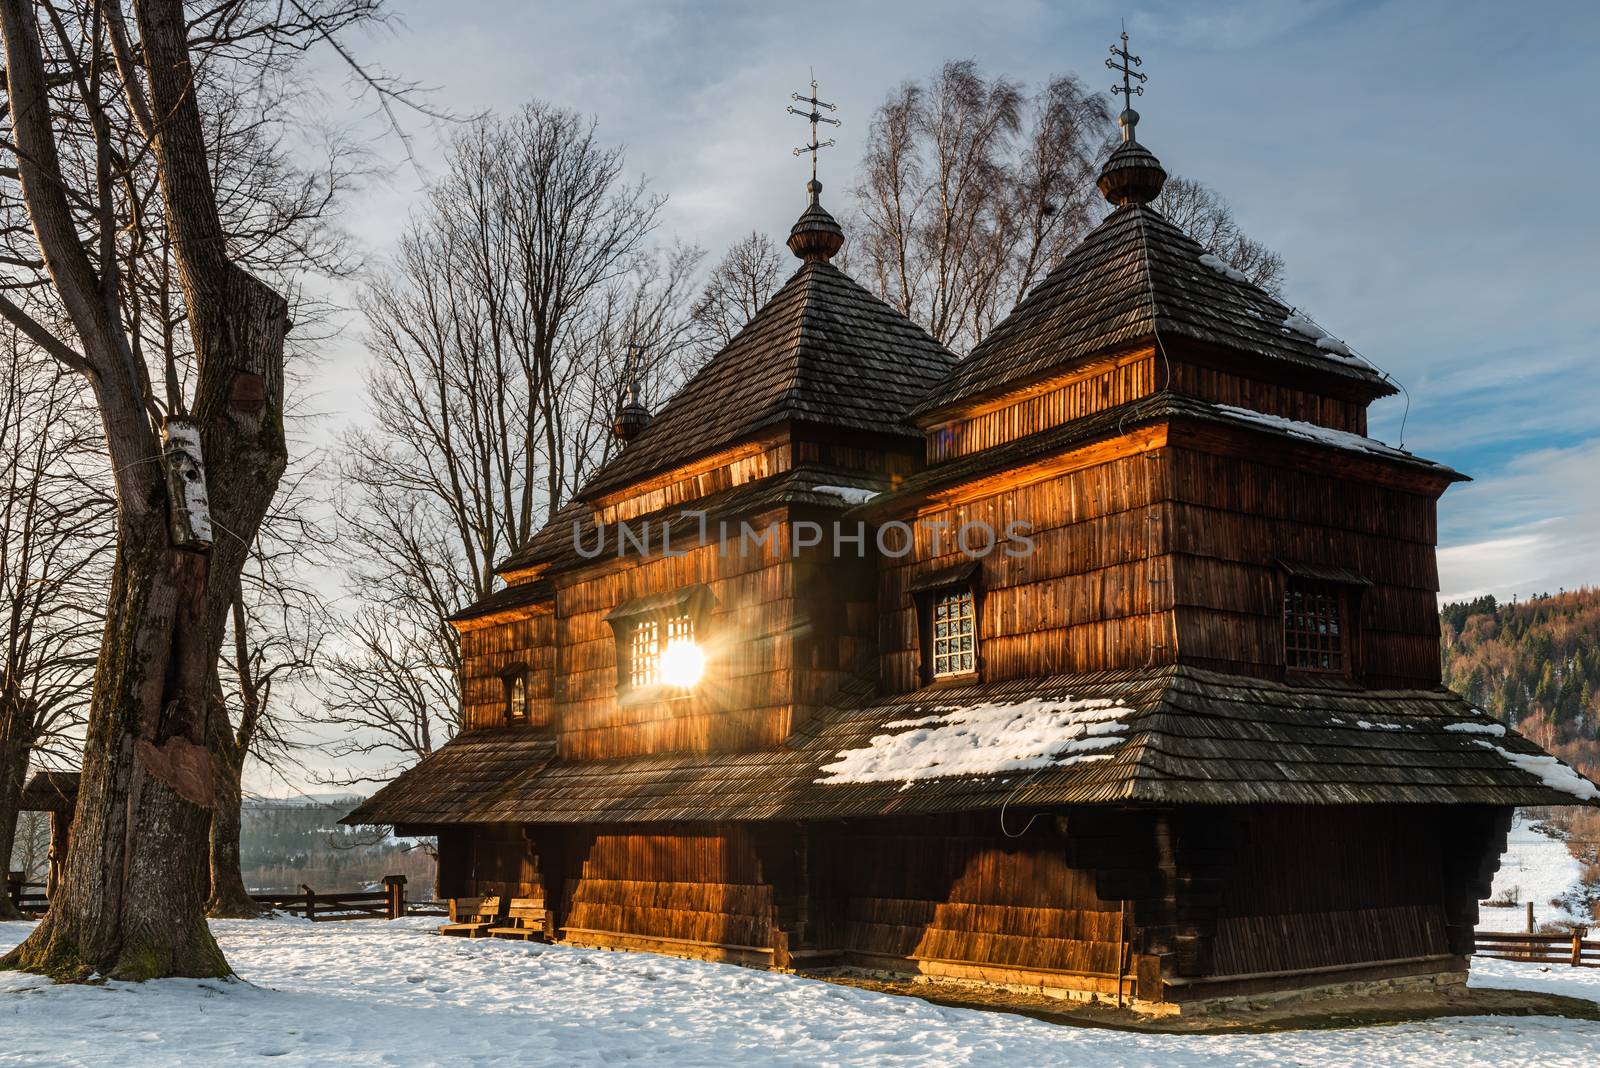 Smolnik Wooden Orthodox Church. Carpathian Mountains and Bieszcz by merc67